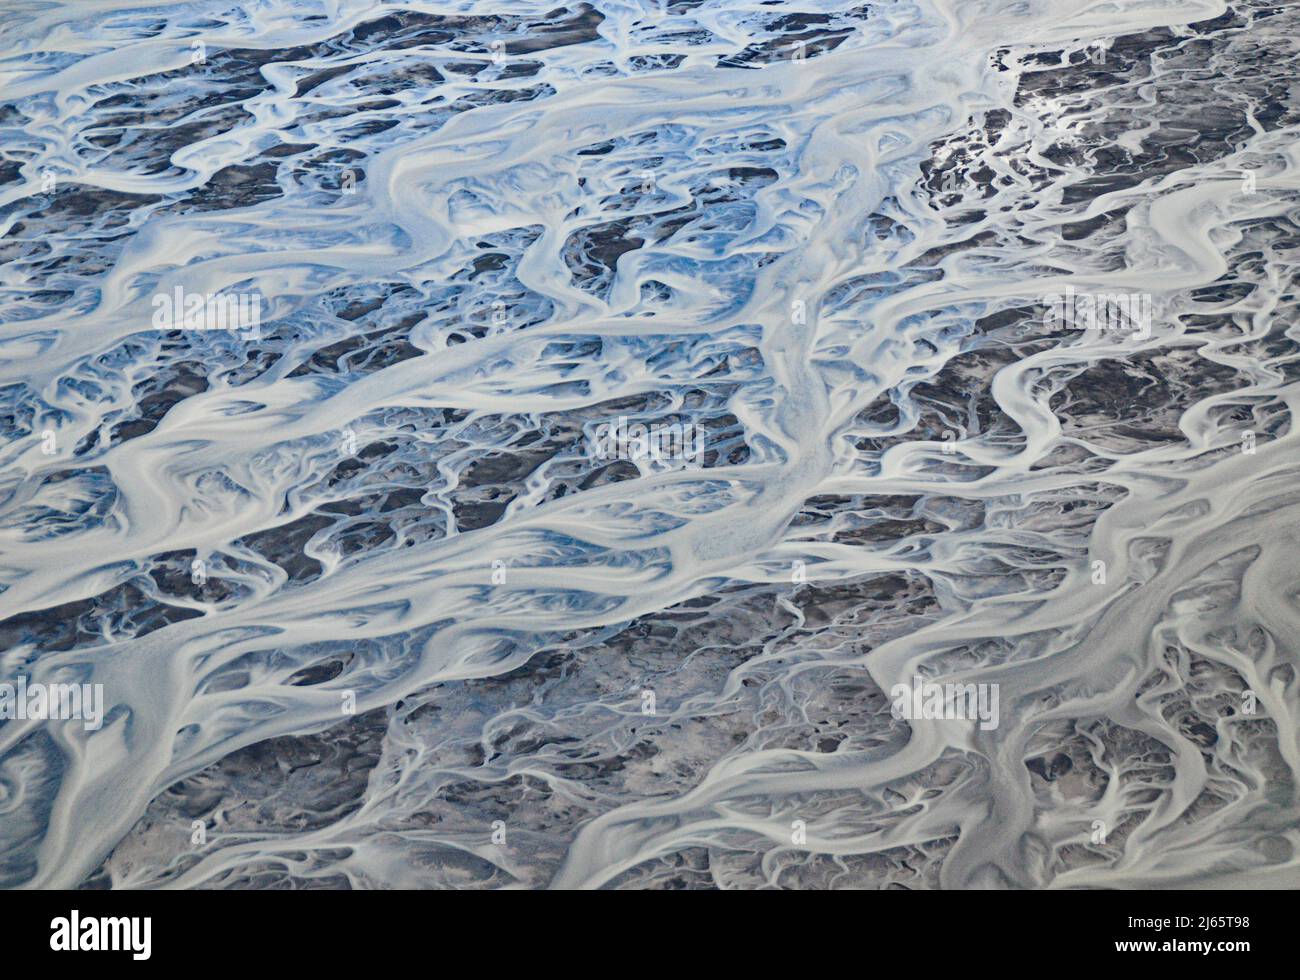 Mäandrierender Fletscherfluss - Luftaufahme (Rundflug über das südliche Hochland, île) - photographie serial d'un glacier en Islande Banque D'Images